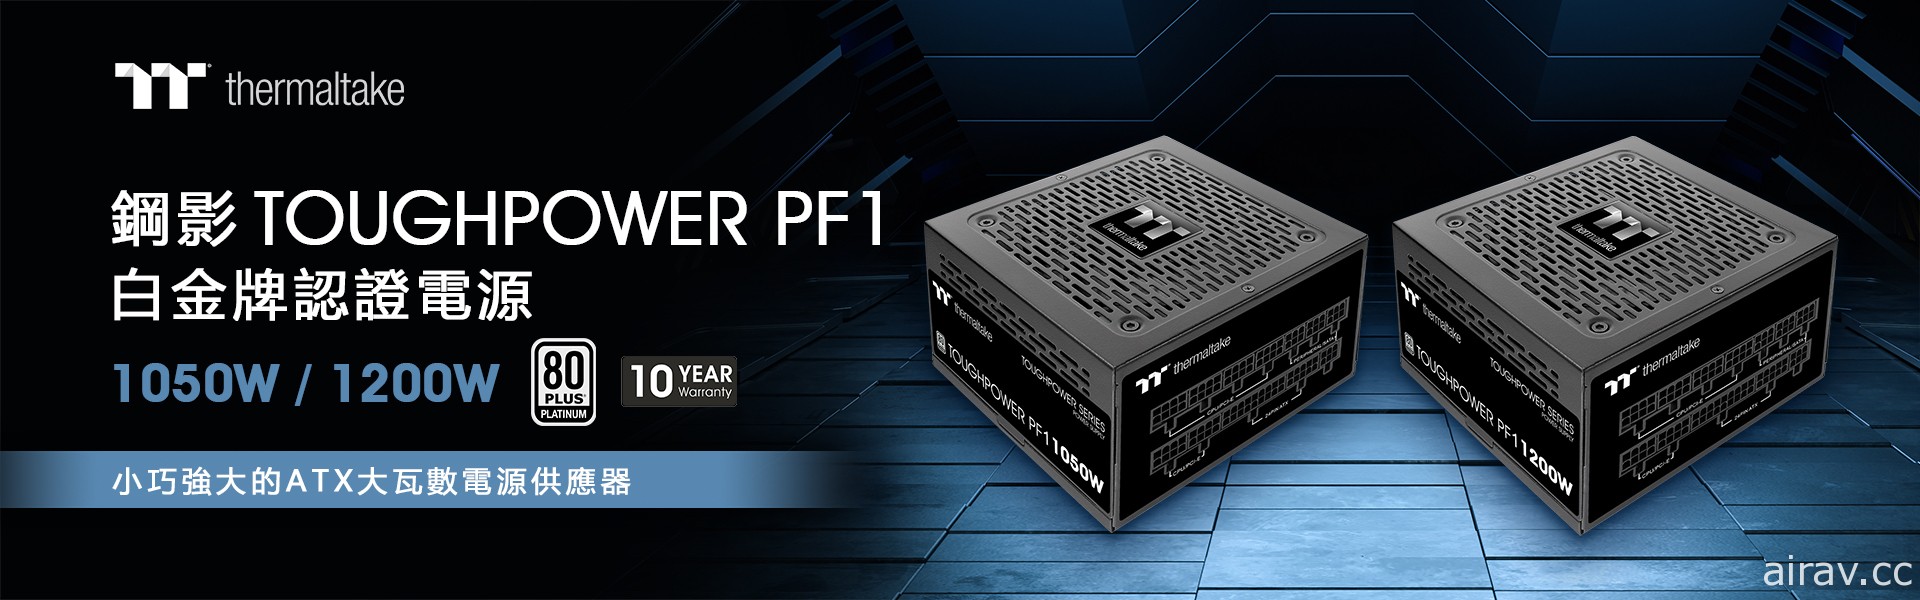 曜越推出鋼影 Toughpower PF1 1050W 和 1200W TT Premium 頂級版電源供應器